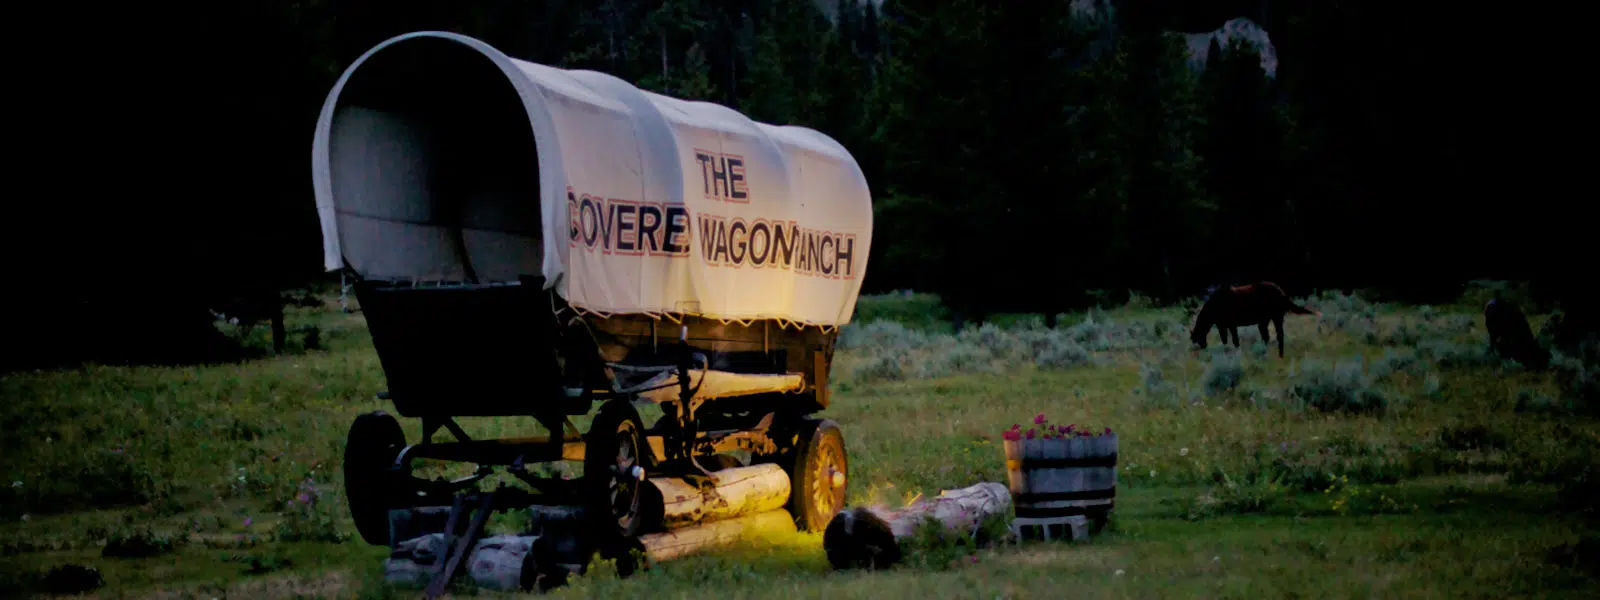 Wagon at Covered Wagon Ranch